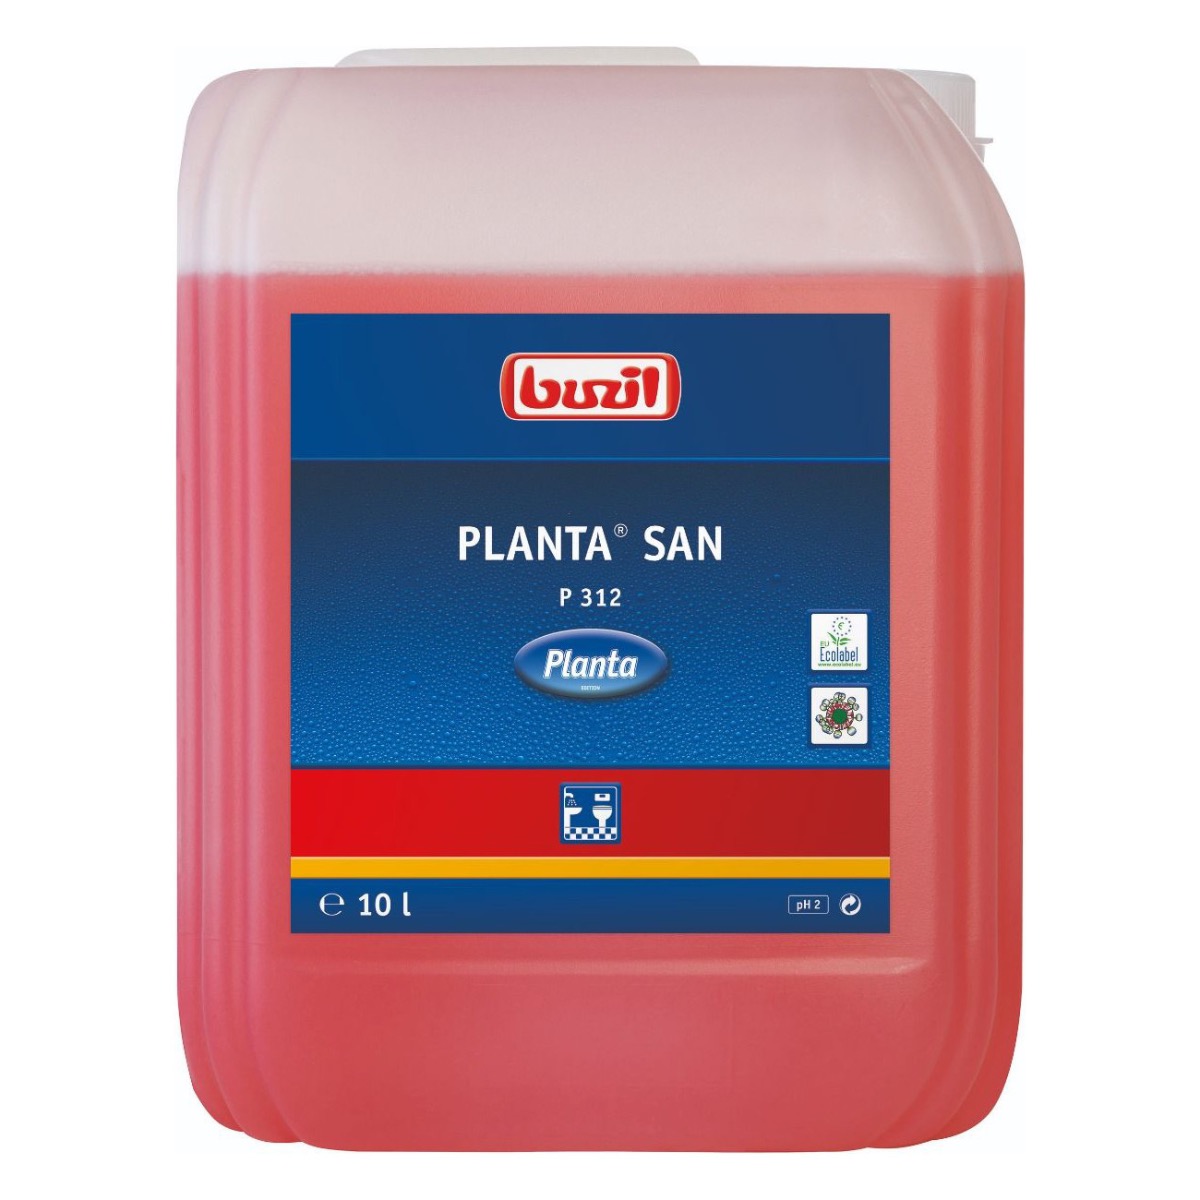 Billede af Buzil Planta San P 312 sanitetsrengøringsmiddel, 10 L